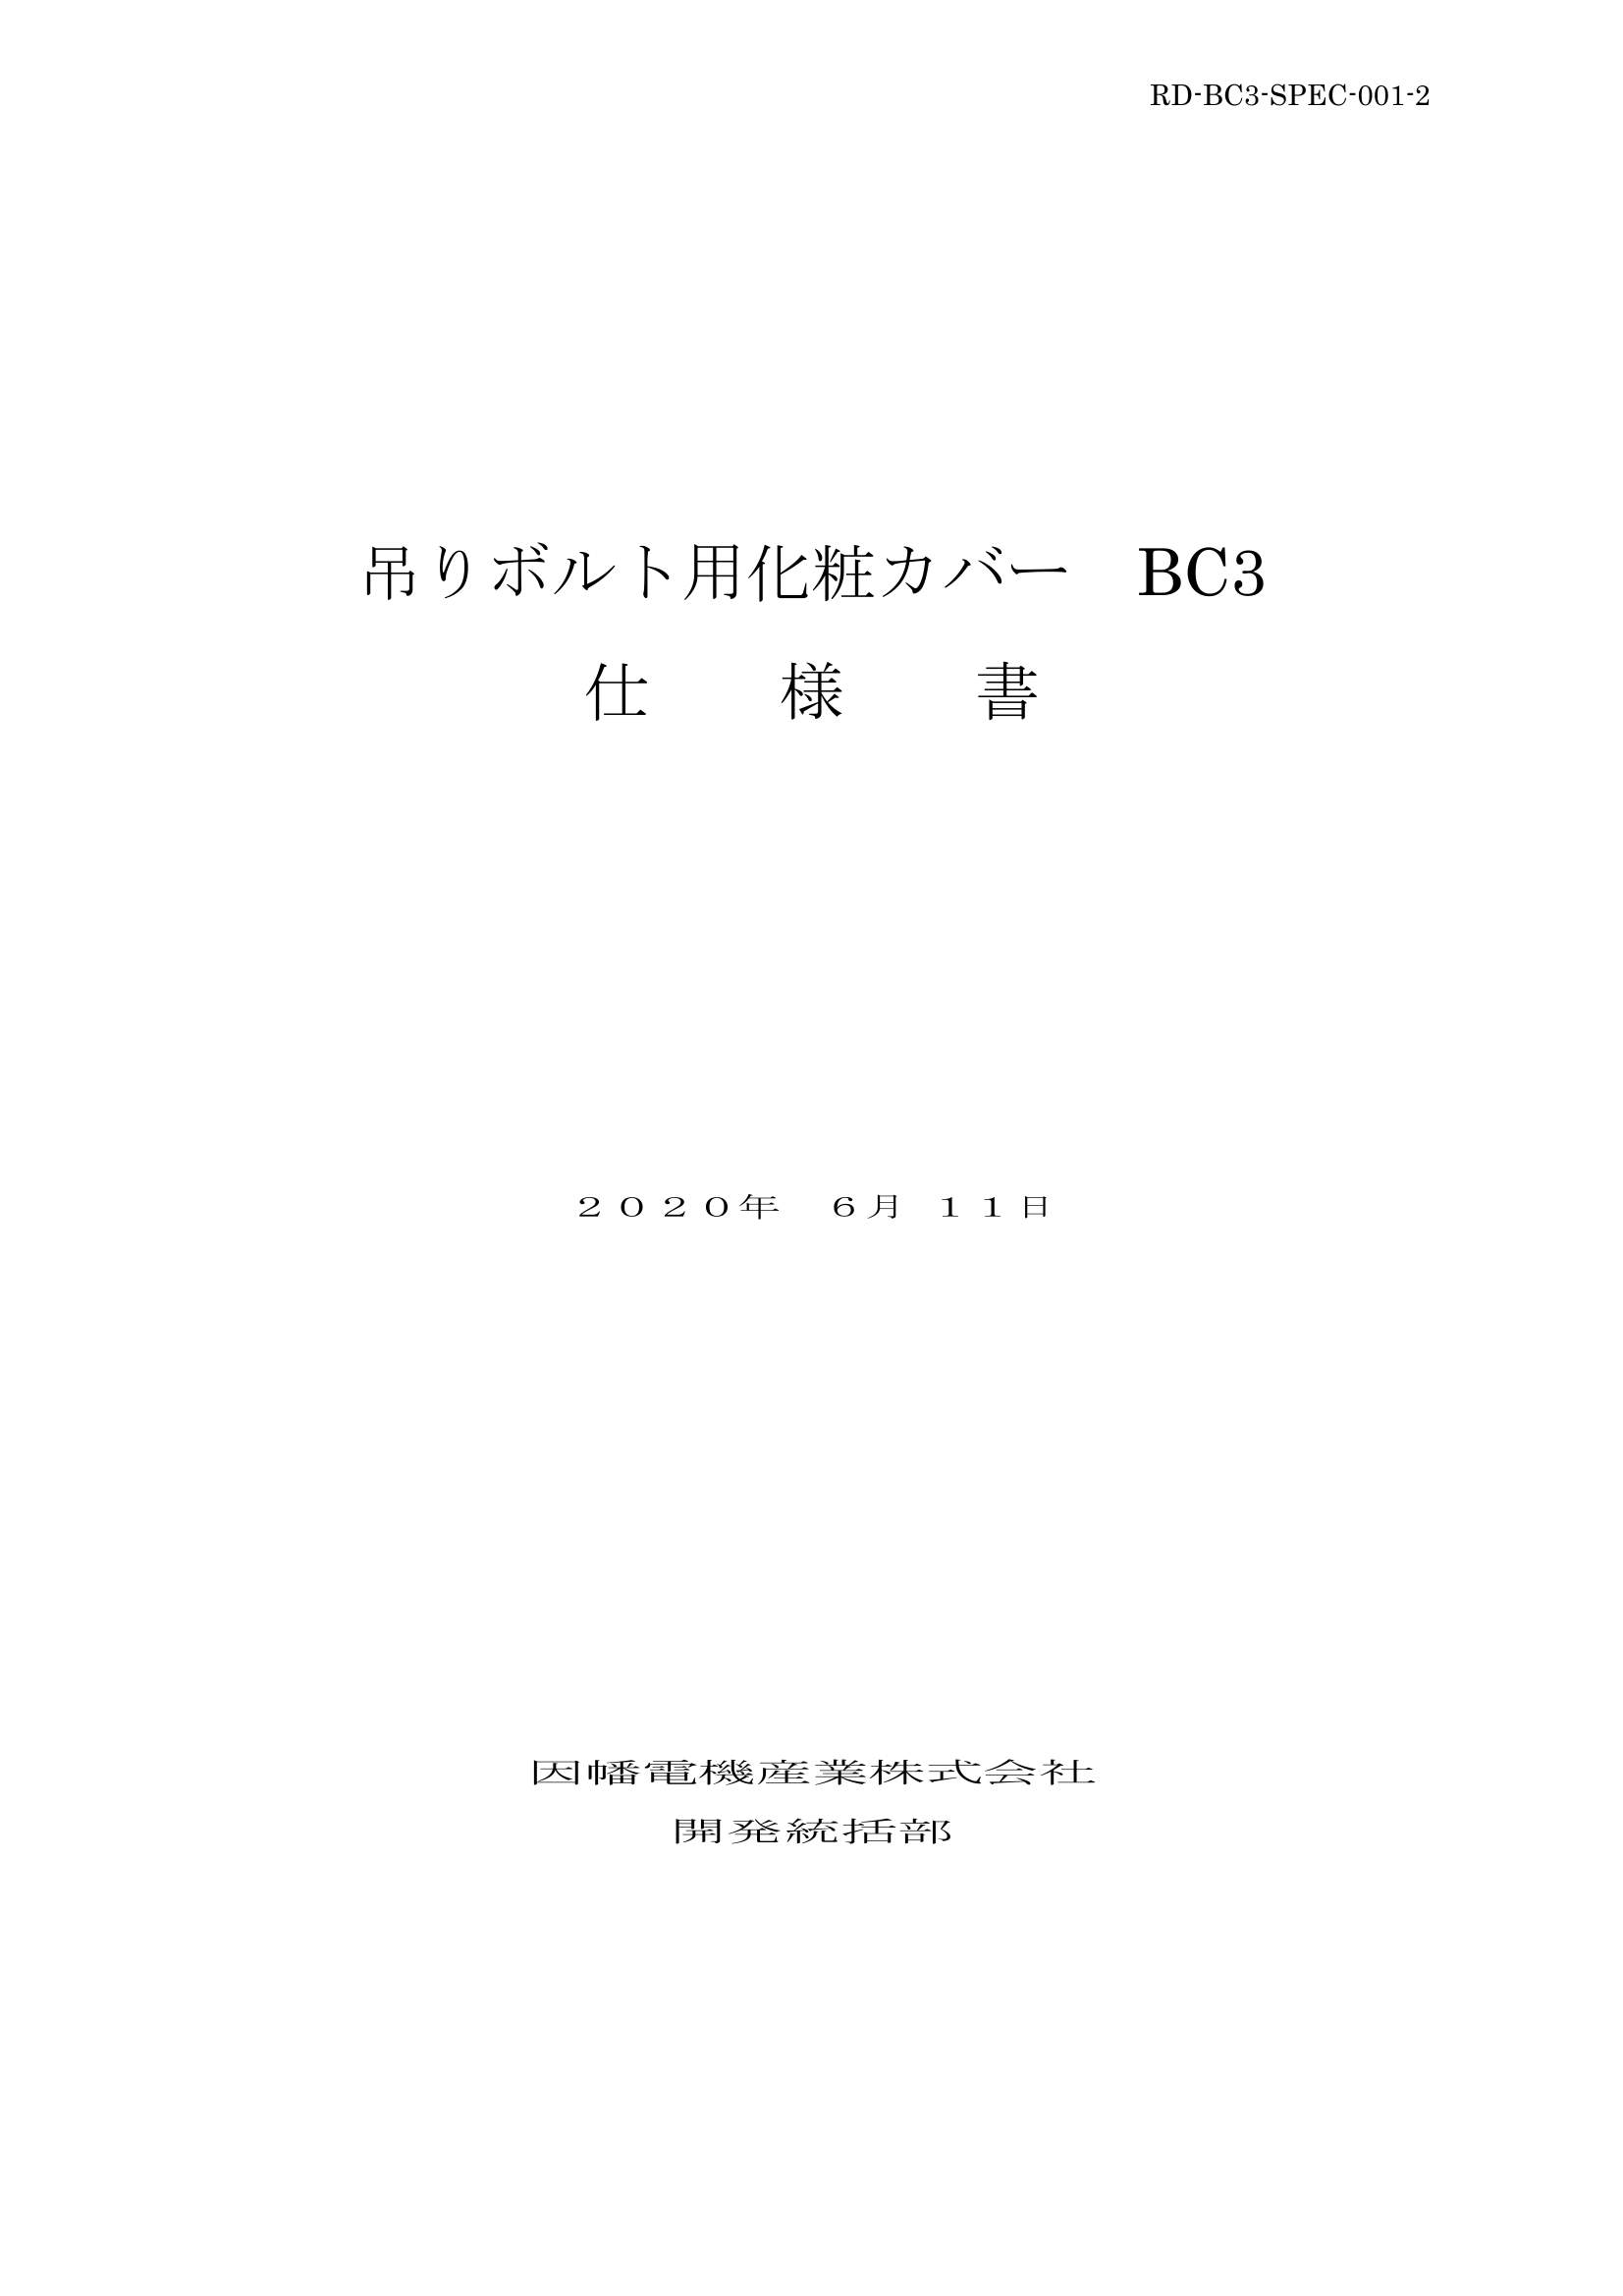 BC3_仕様書_20200611.pdf